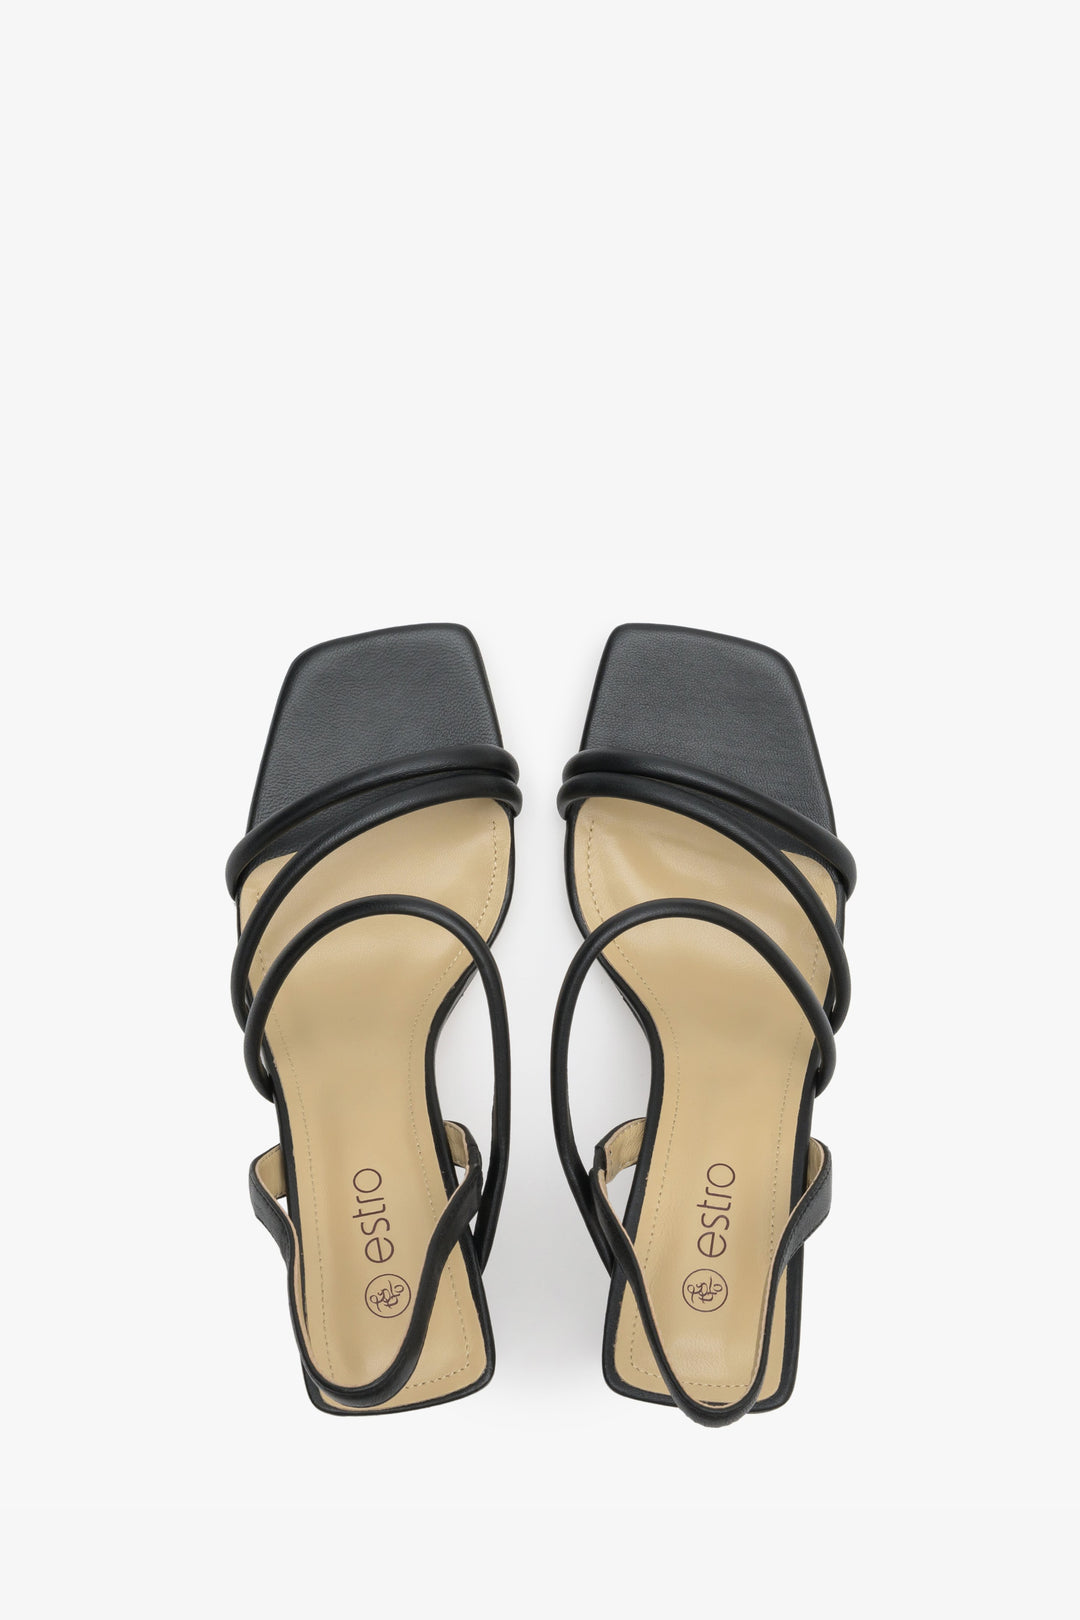 Stylowe, czarne buty damskie z cienkich pasków na słupkowym obcasie - prezentacja modelu z góry.